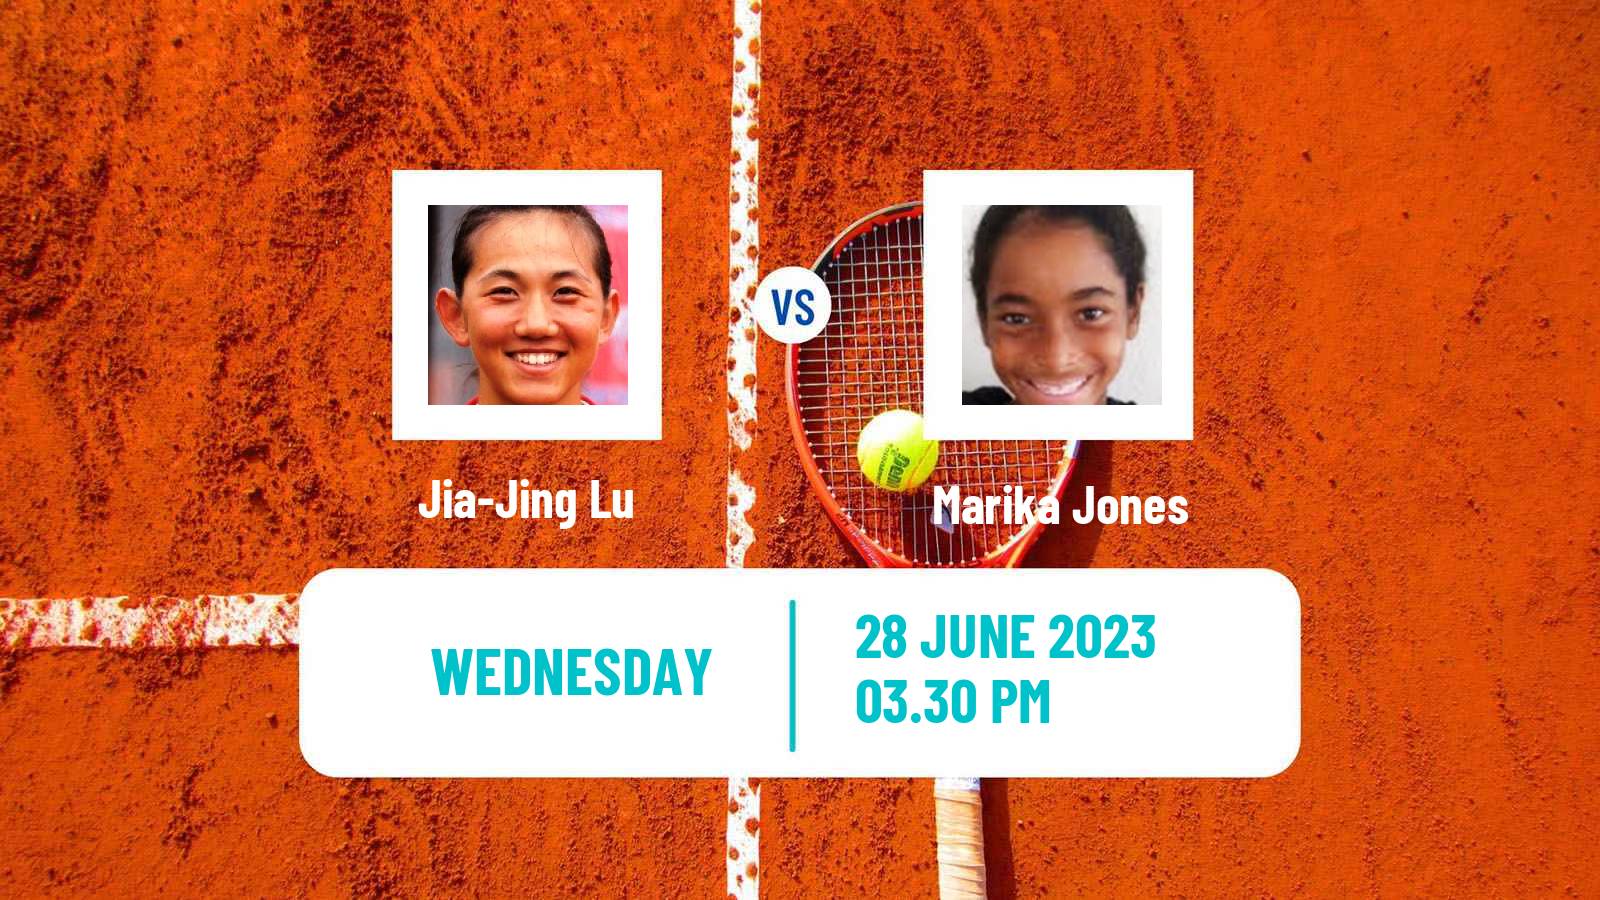 Tennis ITF W15 Irvine Ca Women Jia-Jing Lu - Marika Jones